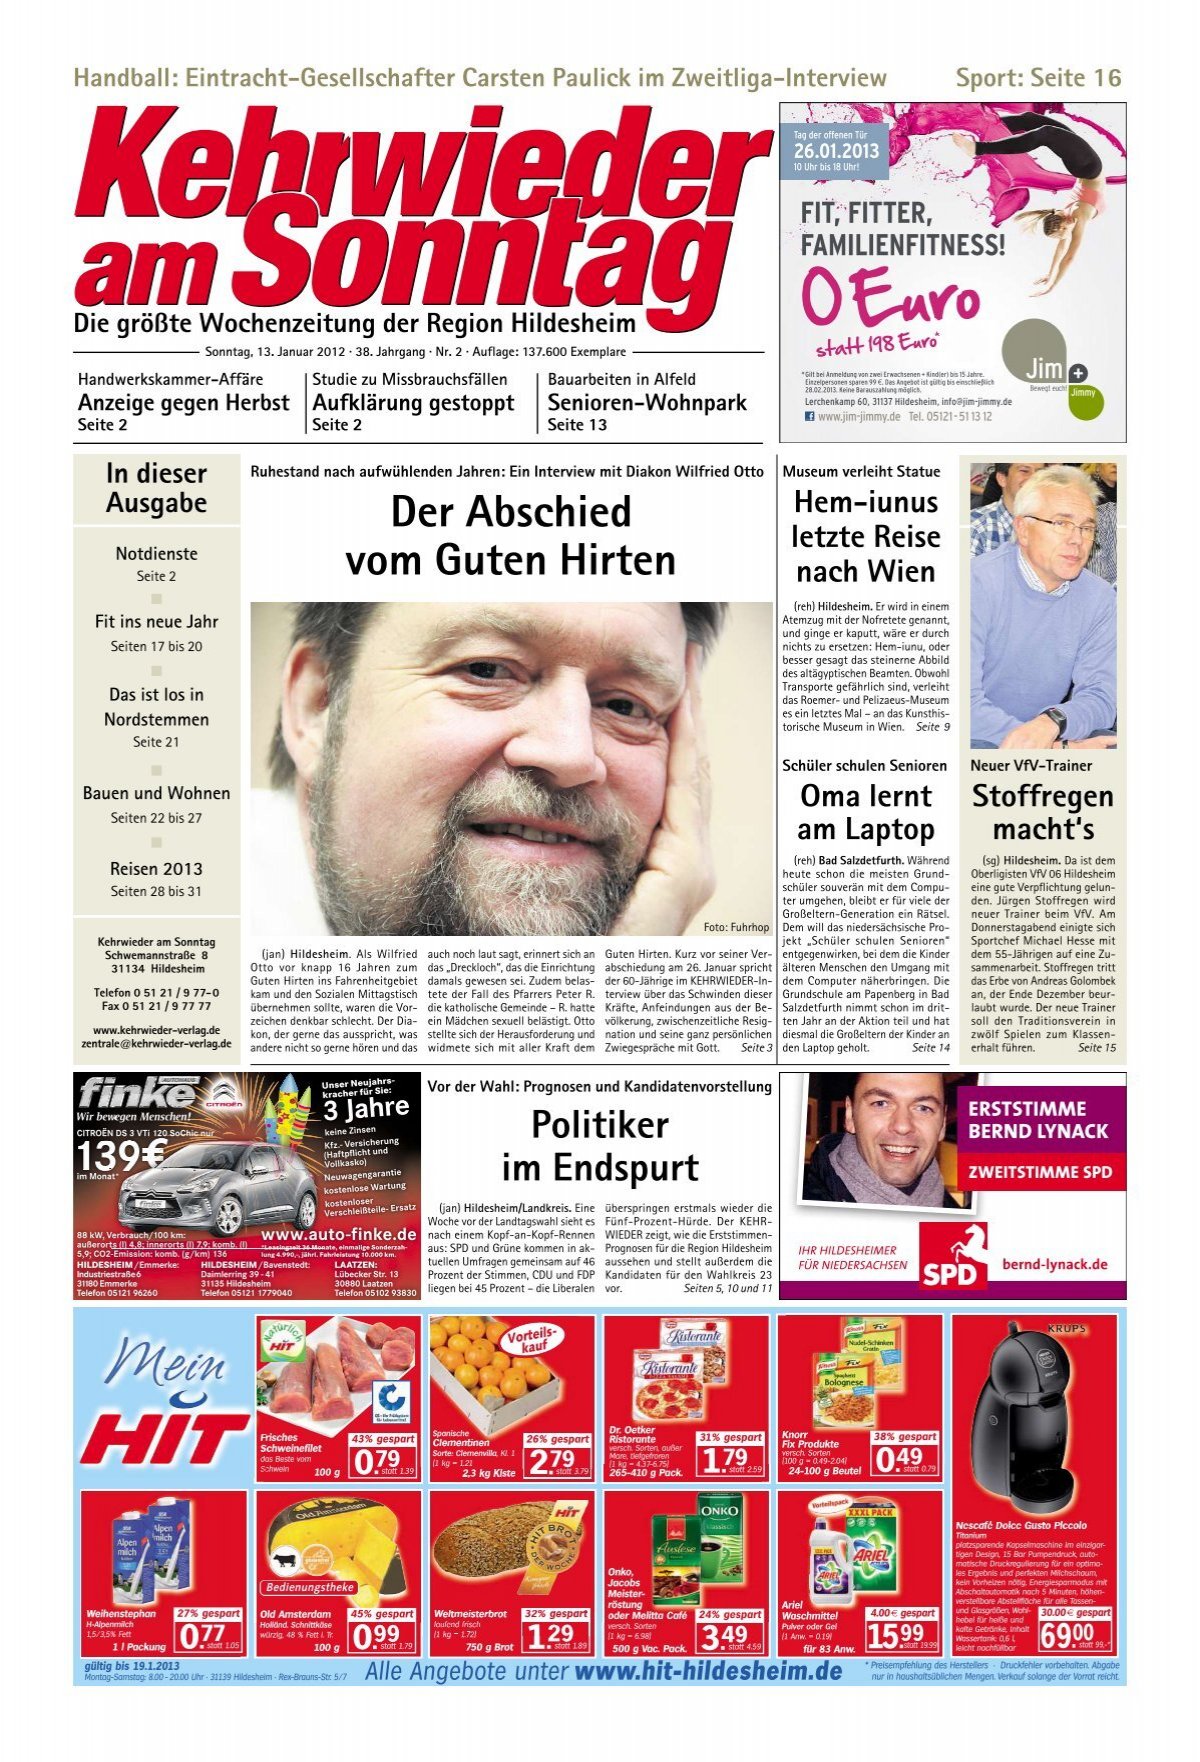 Ausgabe vom 13.01.2013 - Kehrwieder am Sonntag